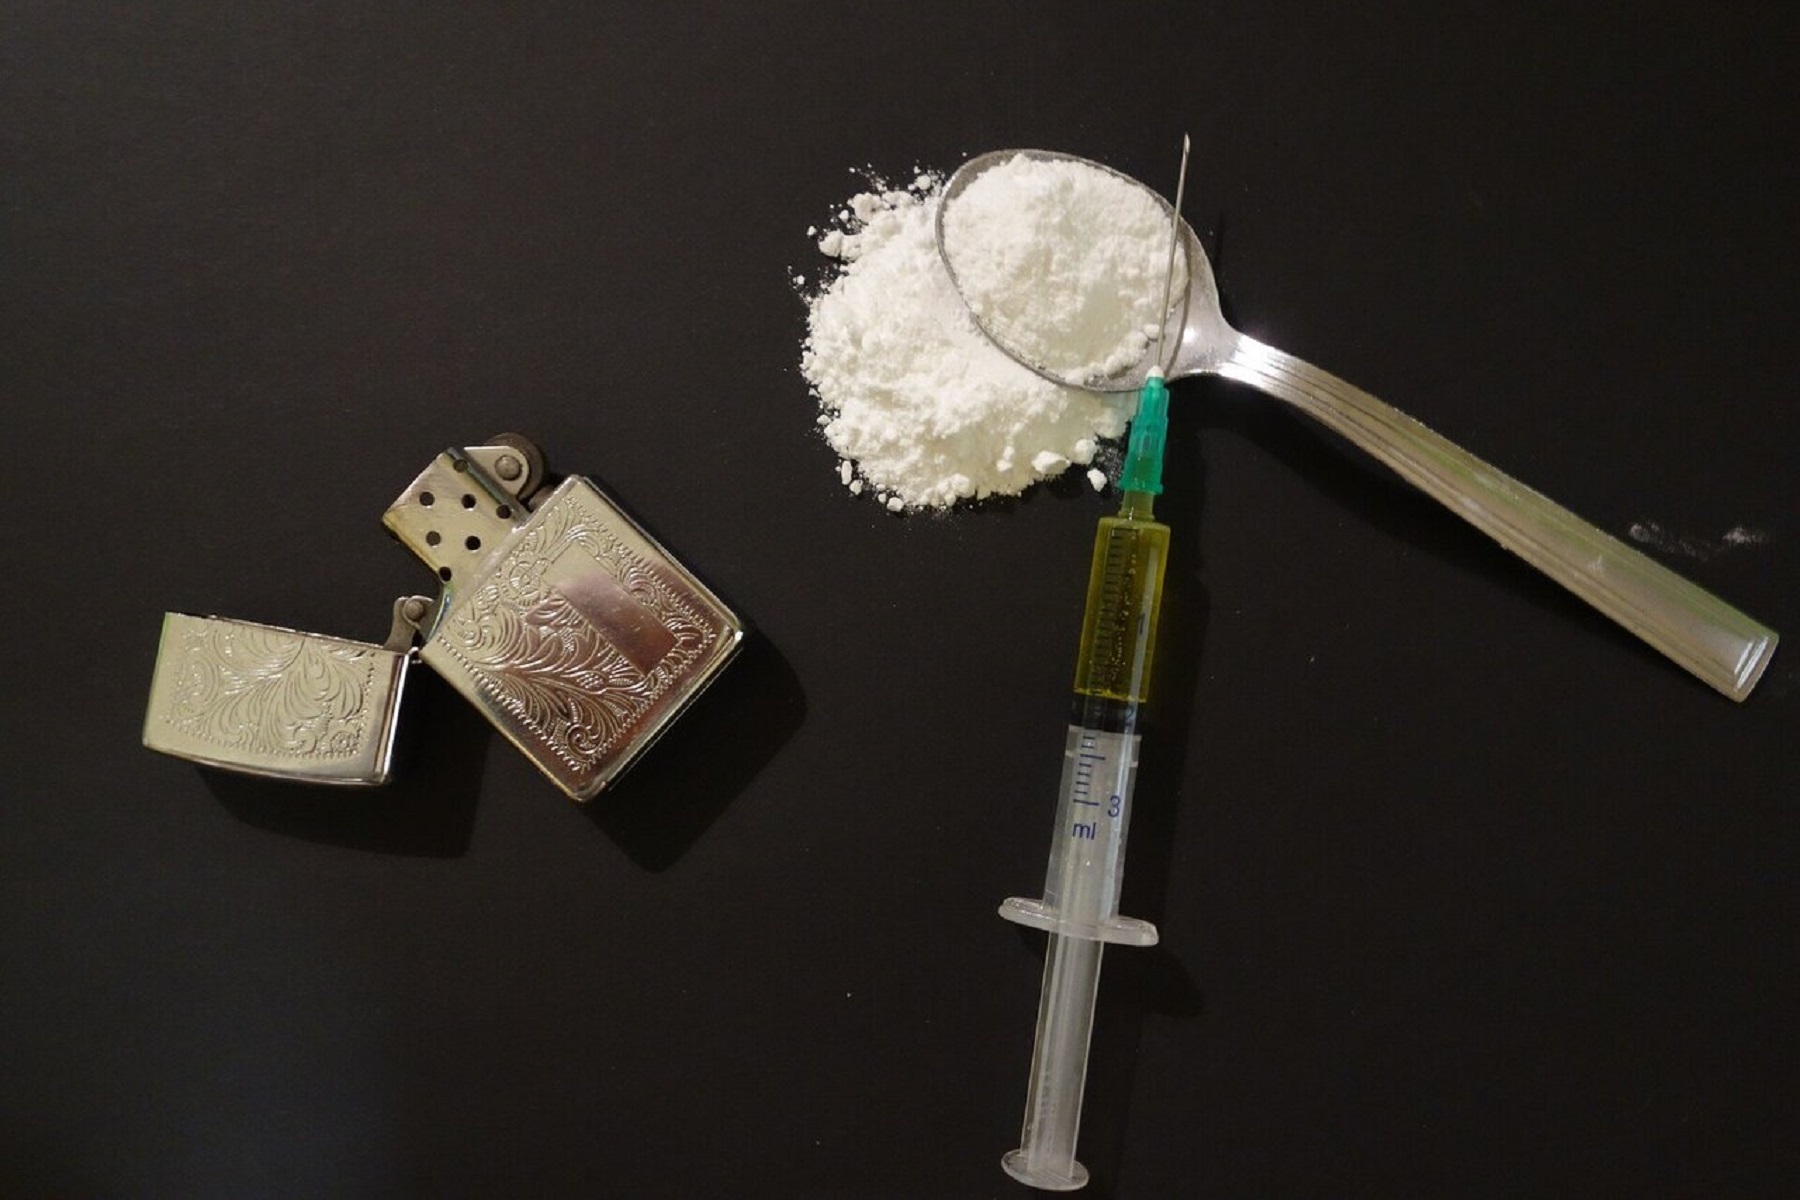 ΗΠΑ CDC: Καταγραφή υψηλών θανάτων από υπερβολική δόση ναρκωτικών στις ΗΠΑ